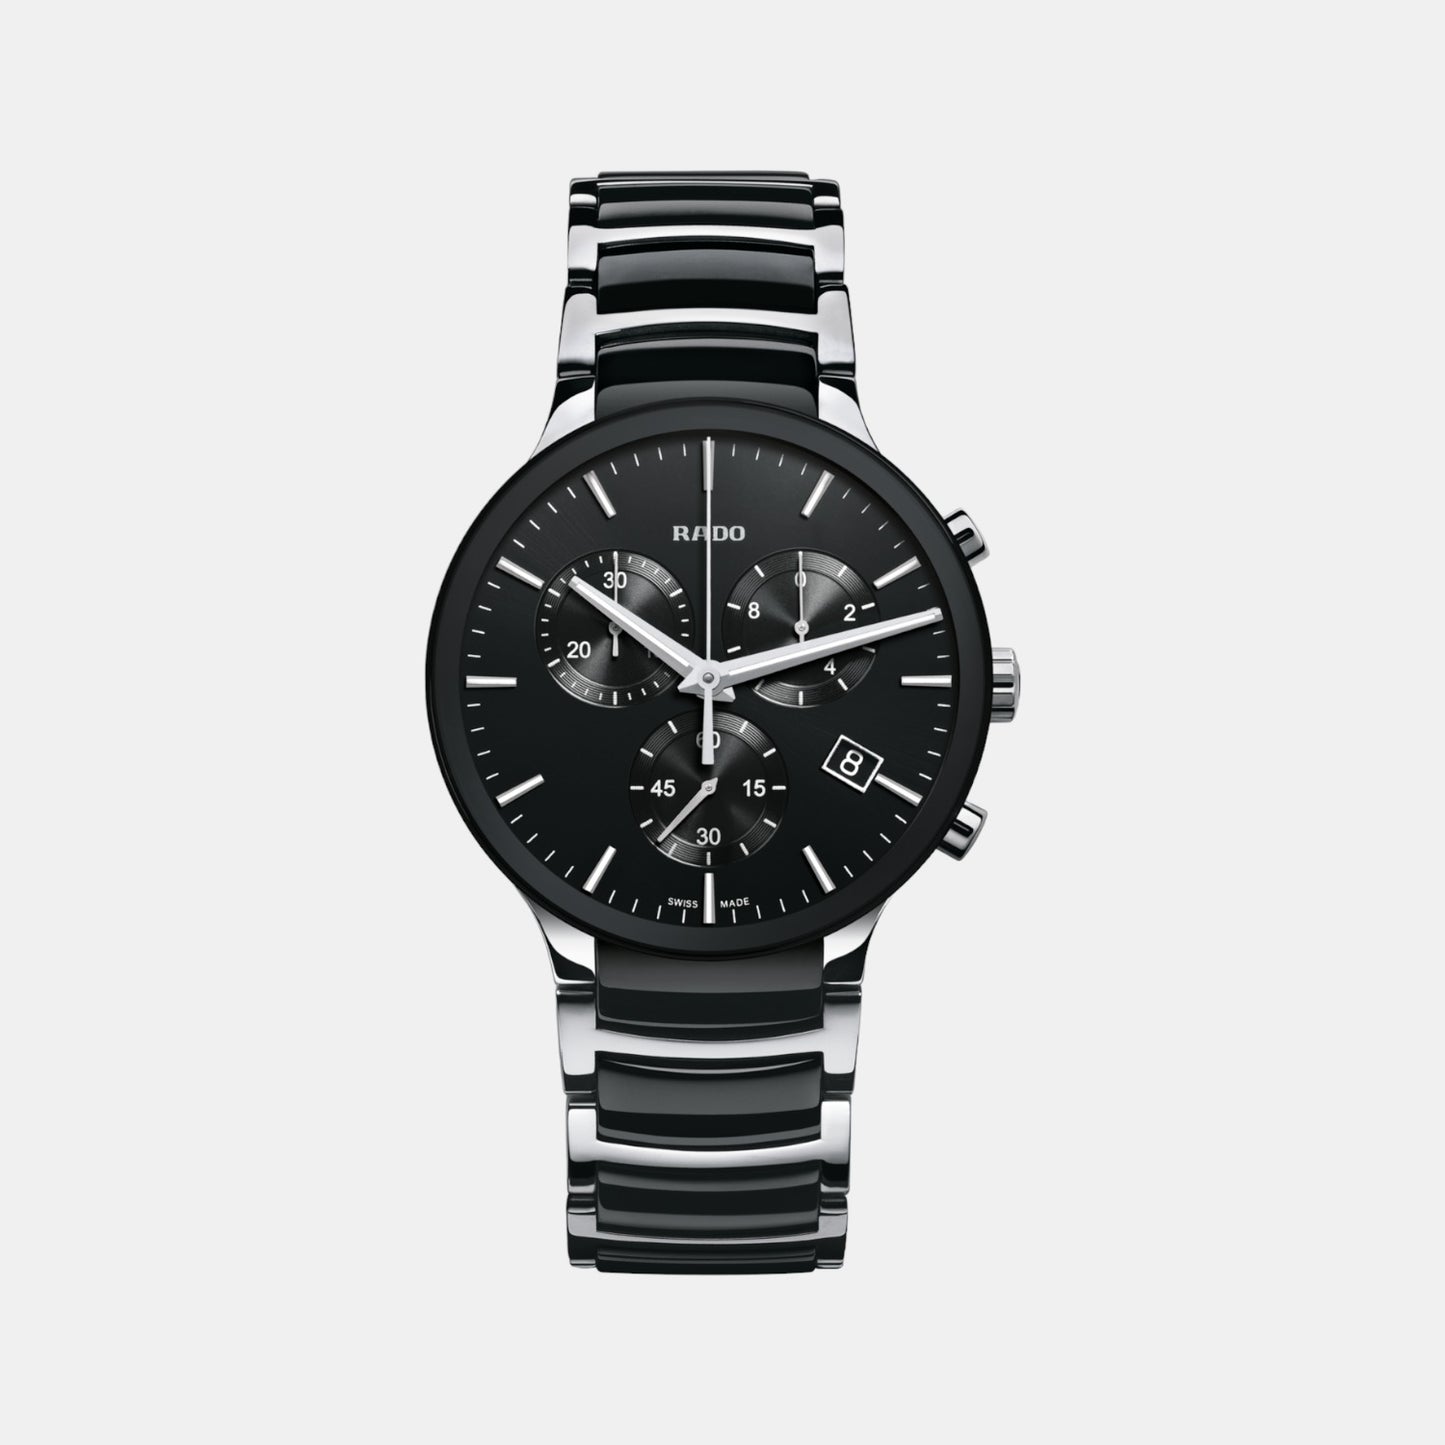 rado-black-analog-men-watch-r30130152